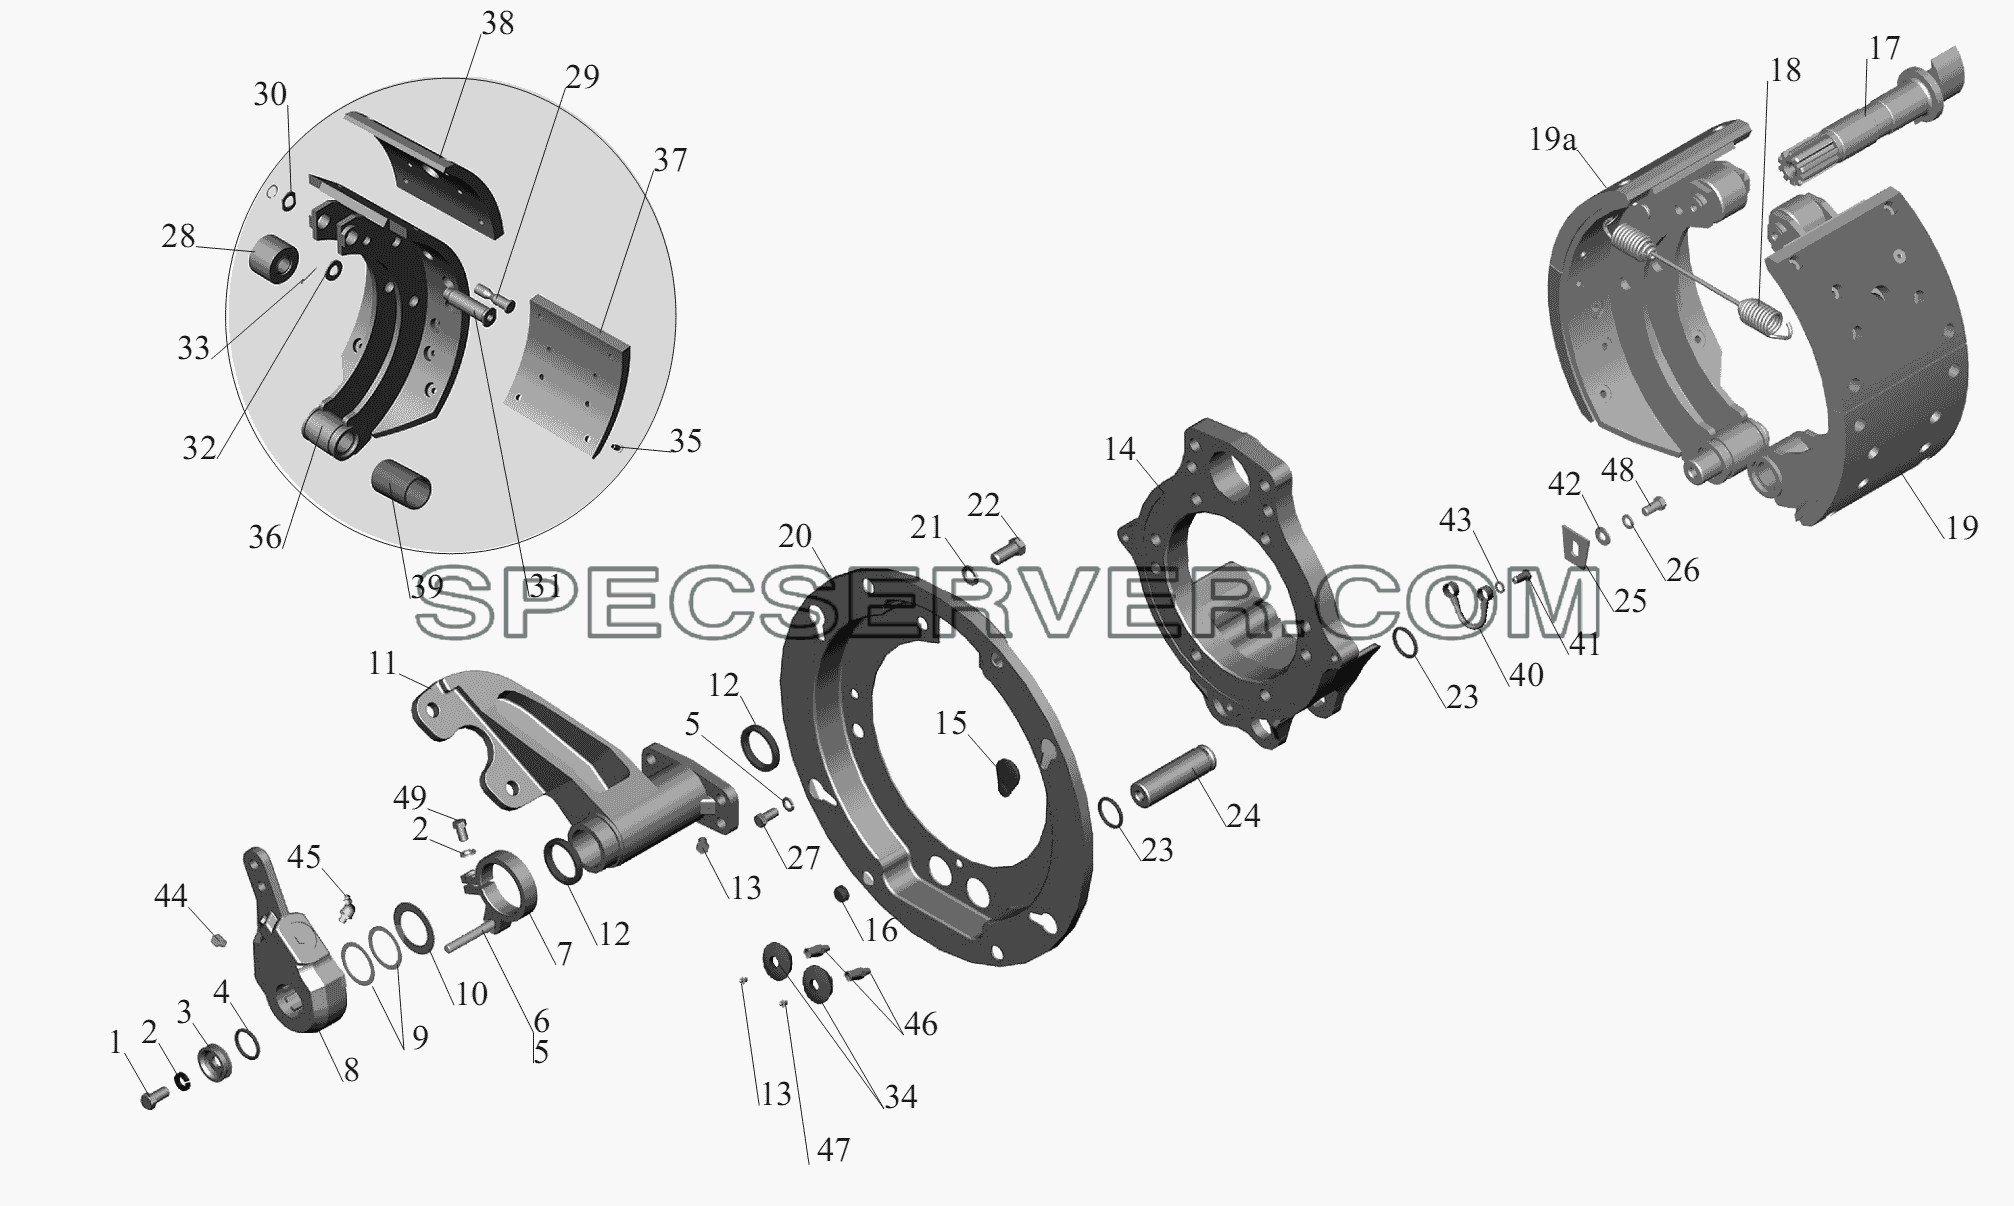 Тормозной механизм передних колес 152-3501004 (152-3501005) для МАЗ-6430A8 (5440A8, 5440A5) (список запасных частей)